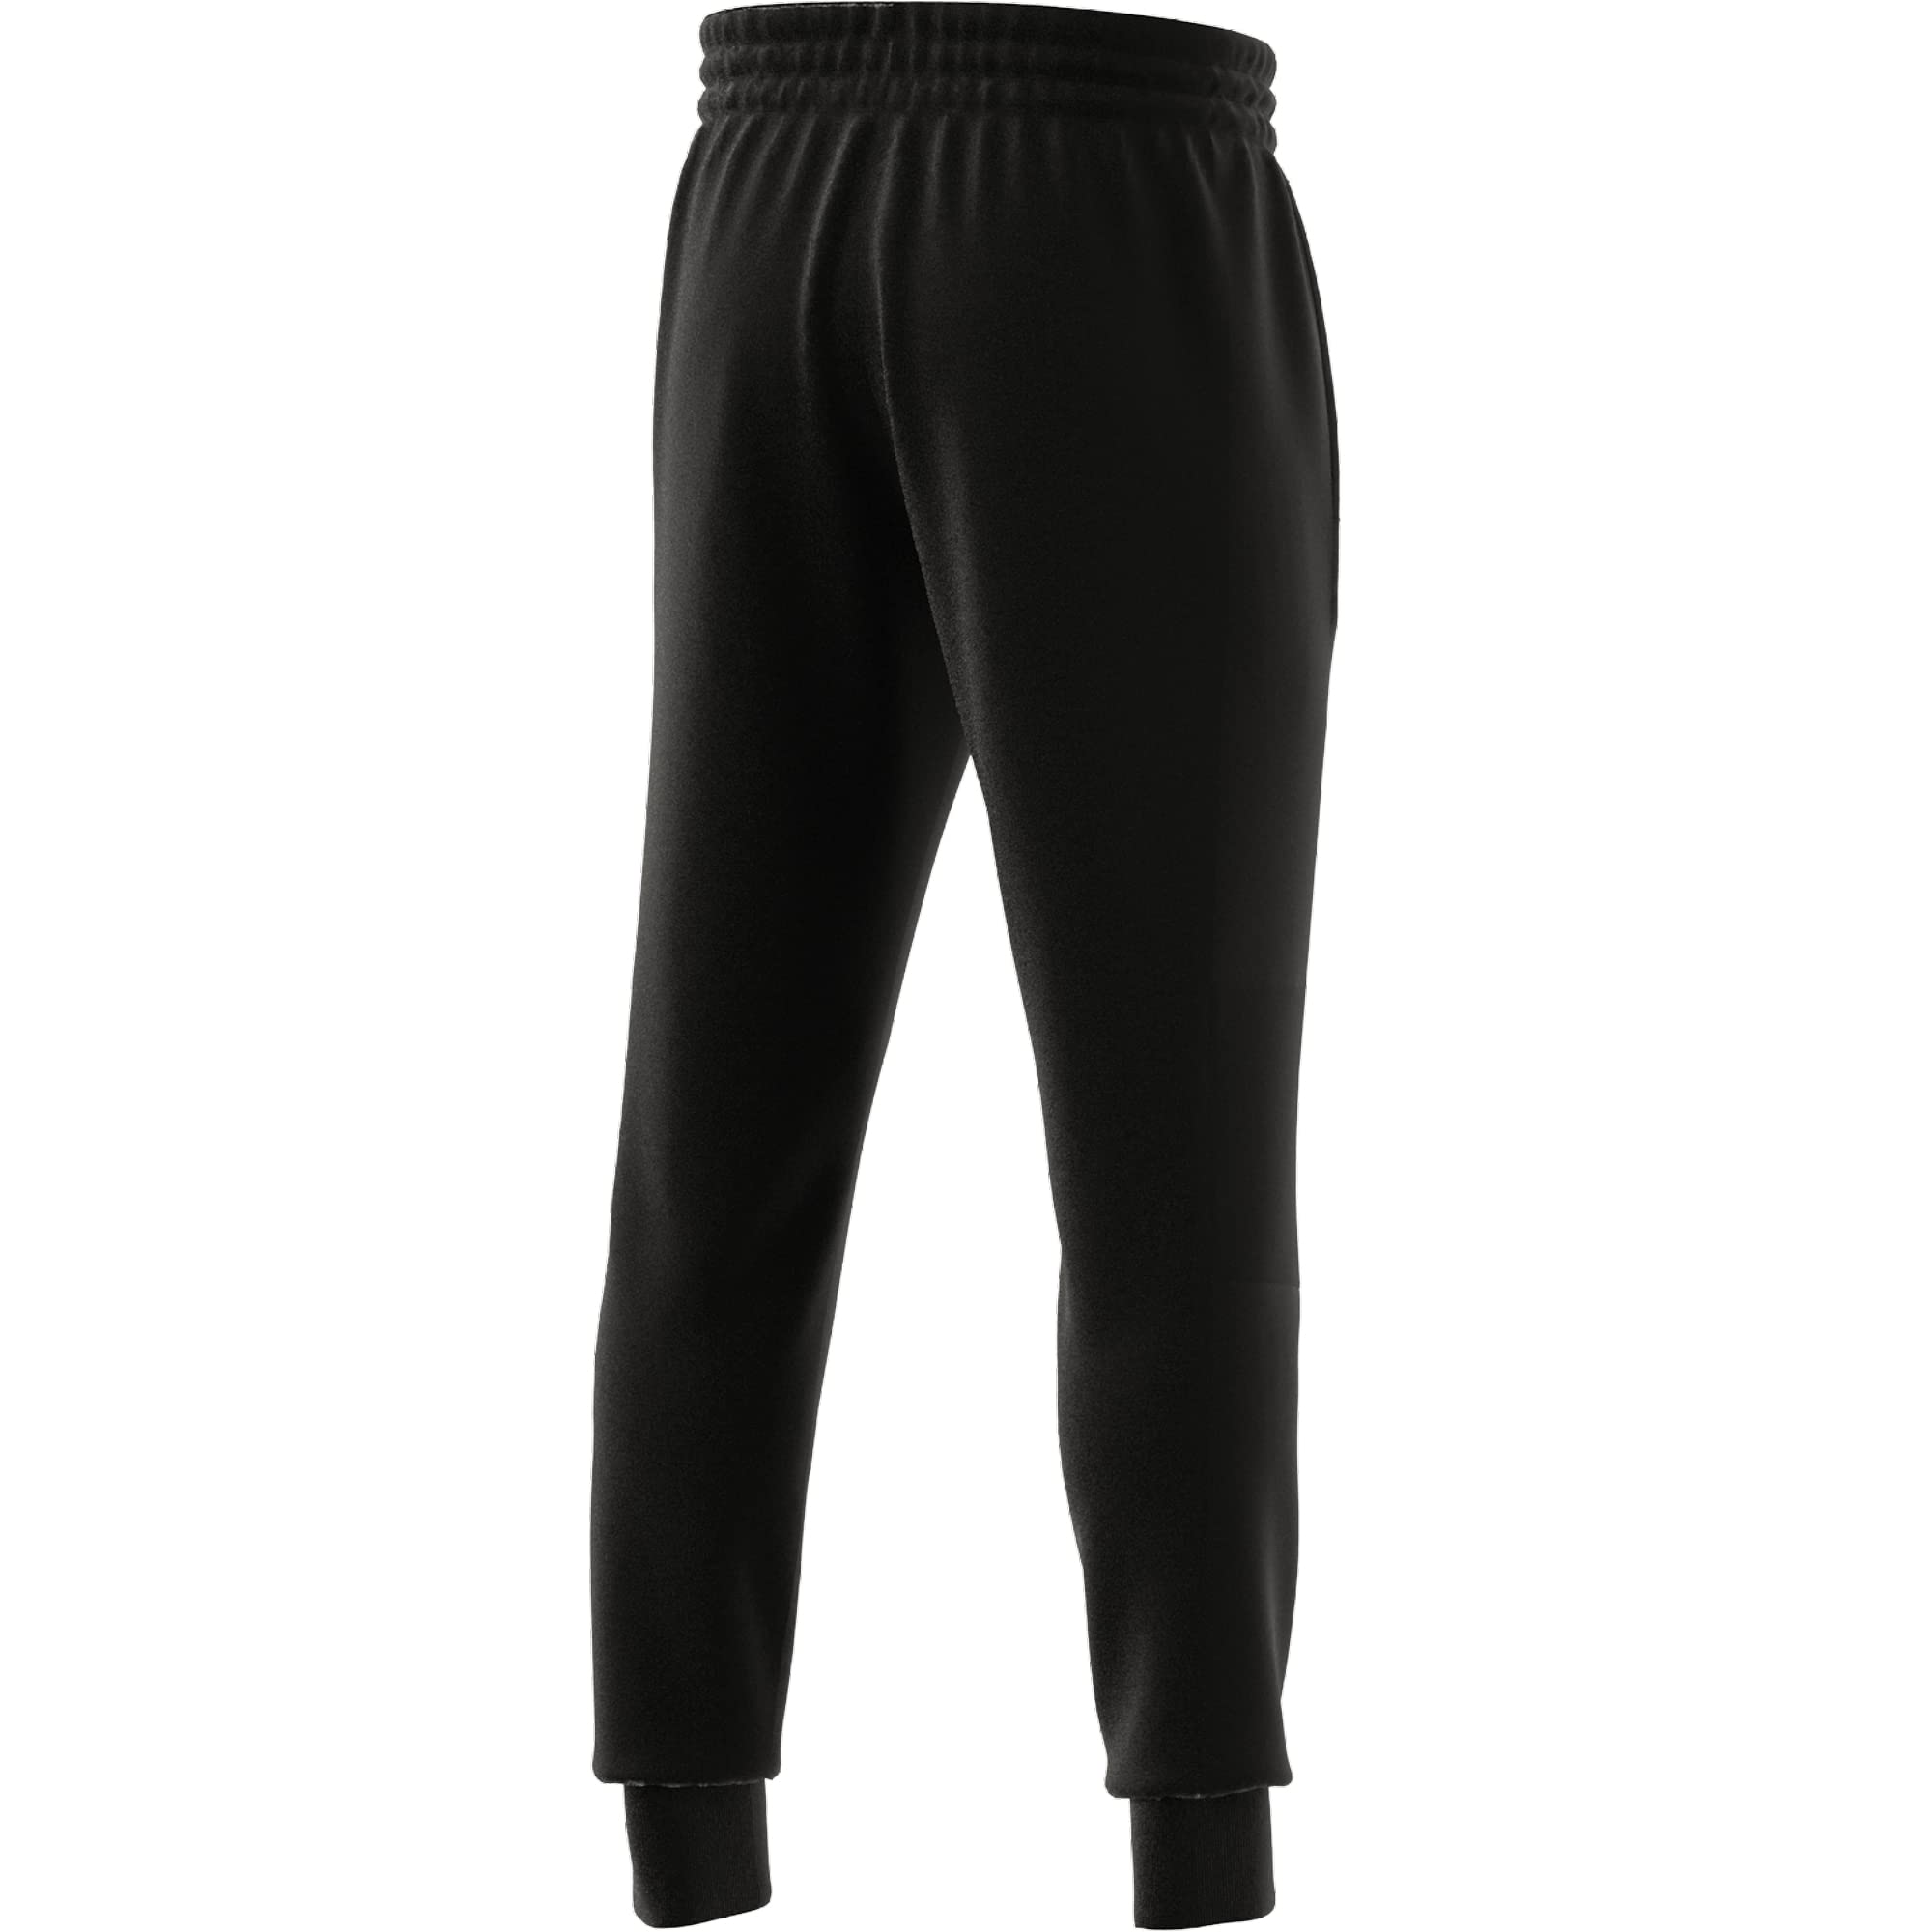 Adidas Men's M BL FT PT Pants Black